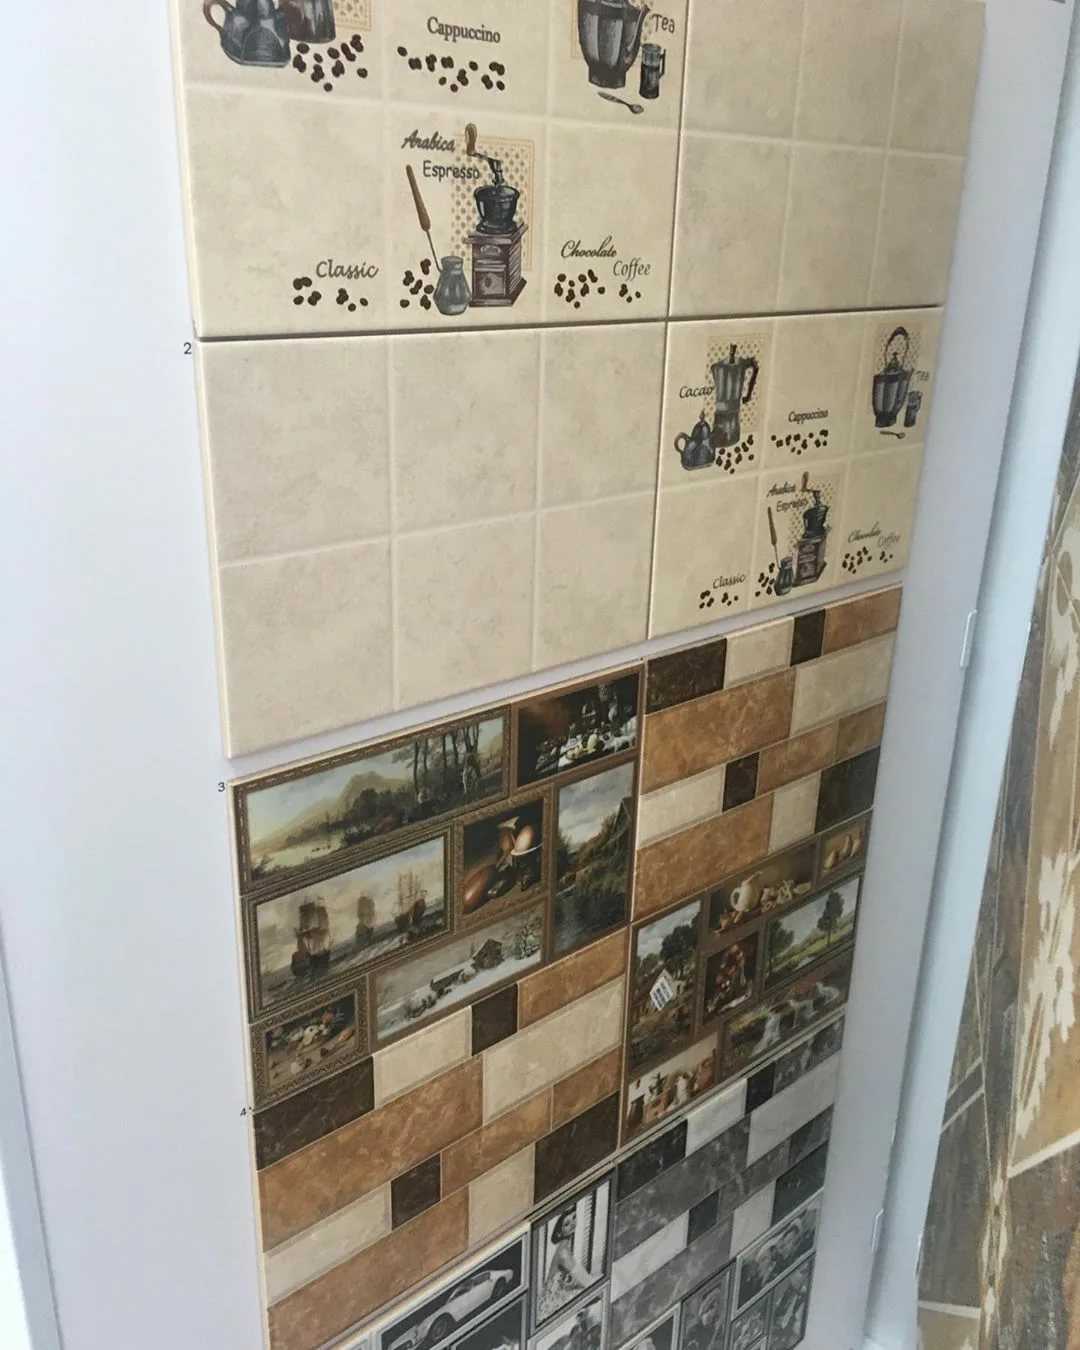 Плитка для ванной комнаты недорого , купить дешевую плитку для ванной в интернет-магазине plitka-sdvk.ru в москве. каталог плитки в ванную комнату недорого с ценами, фото, отзывами